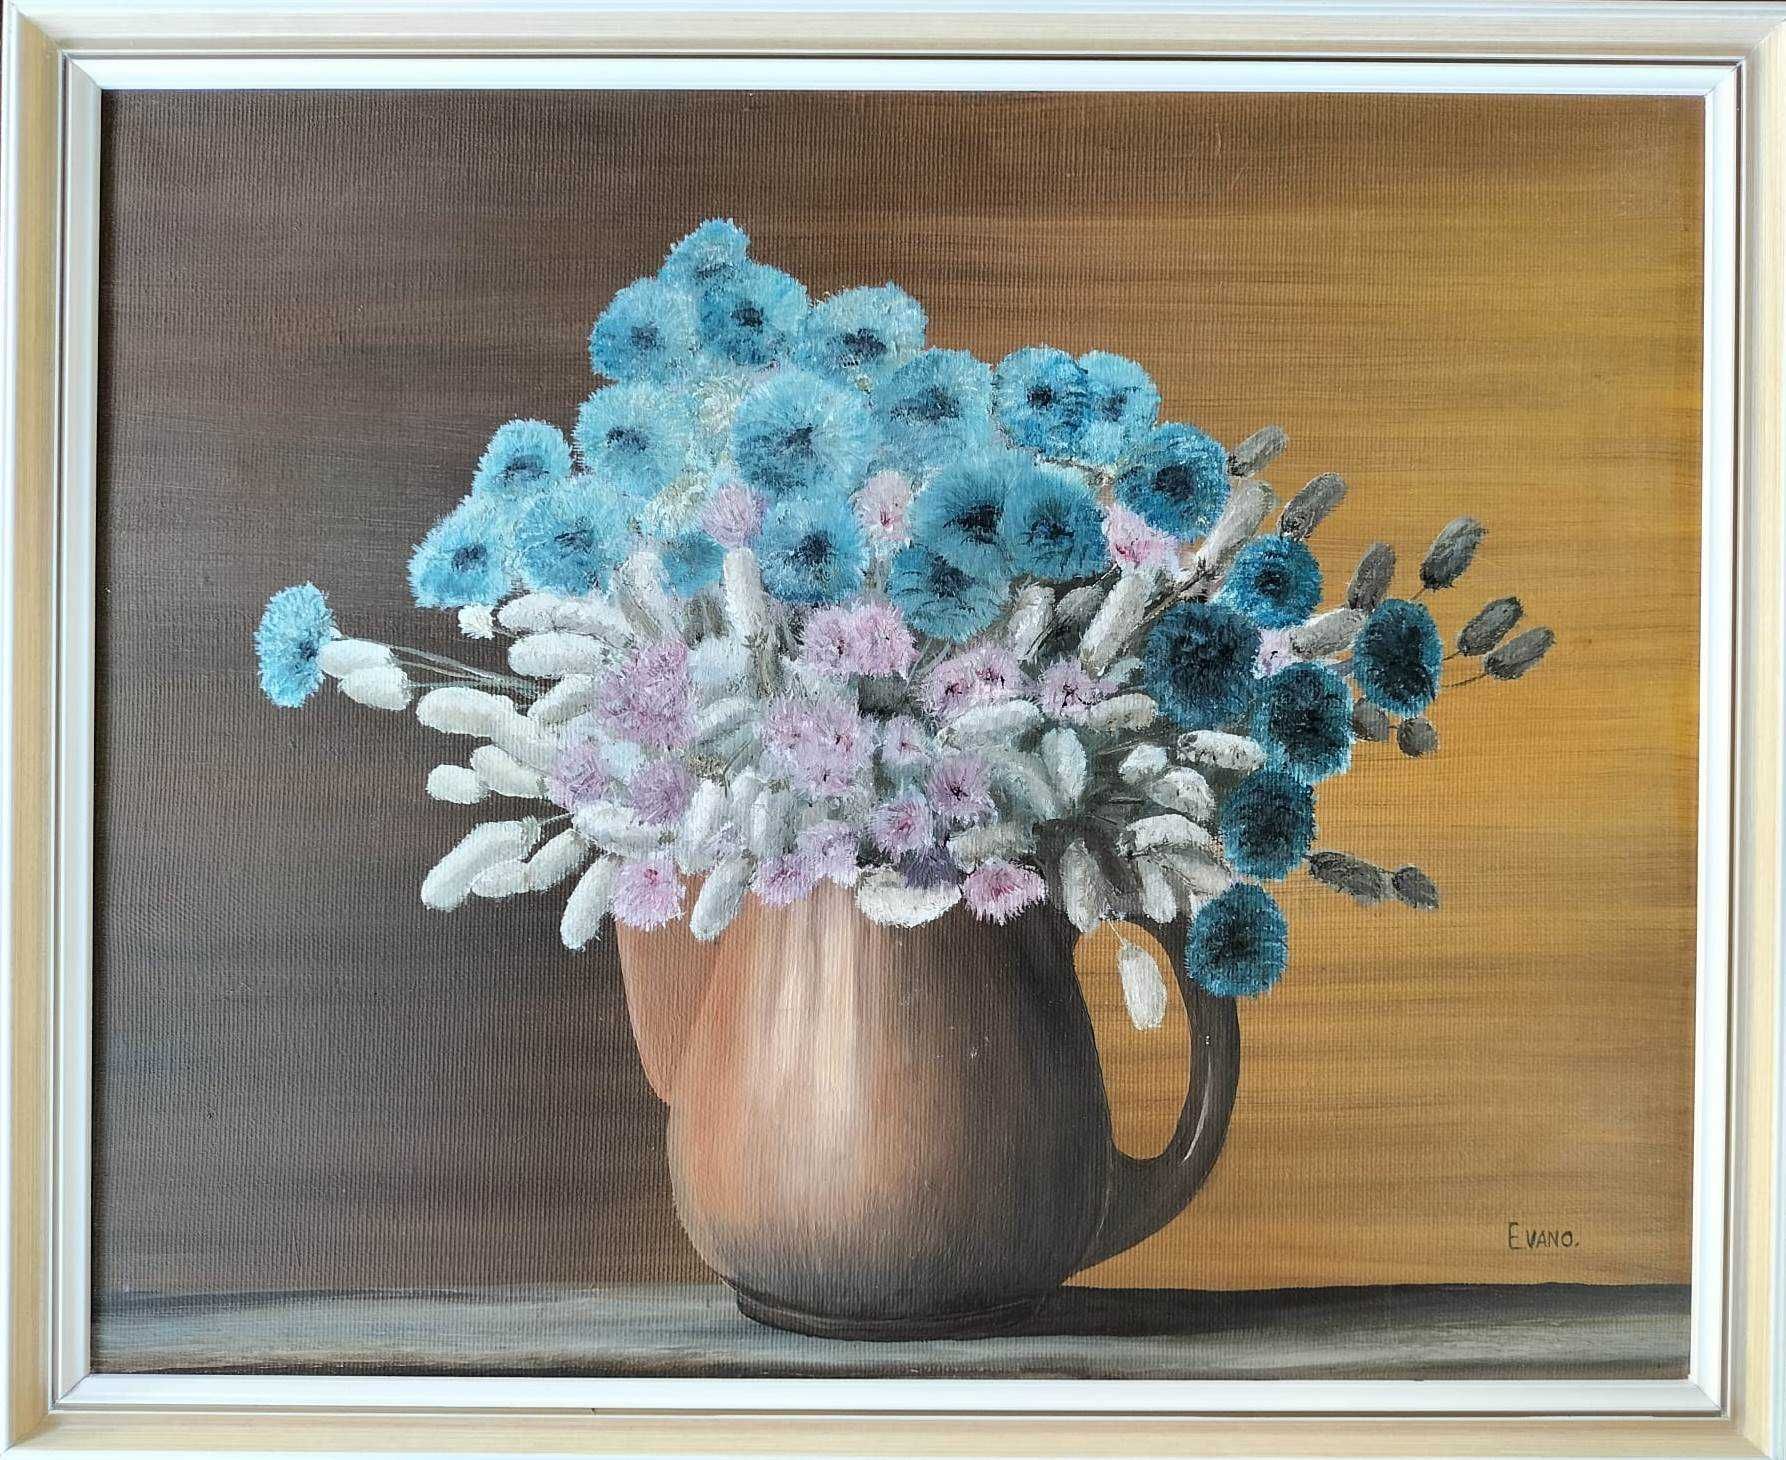 Evano-"Ceainic cu flori", pictură frumoasă în ulei pe pânză